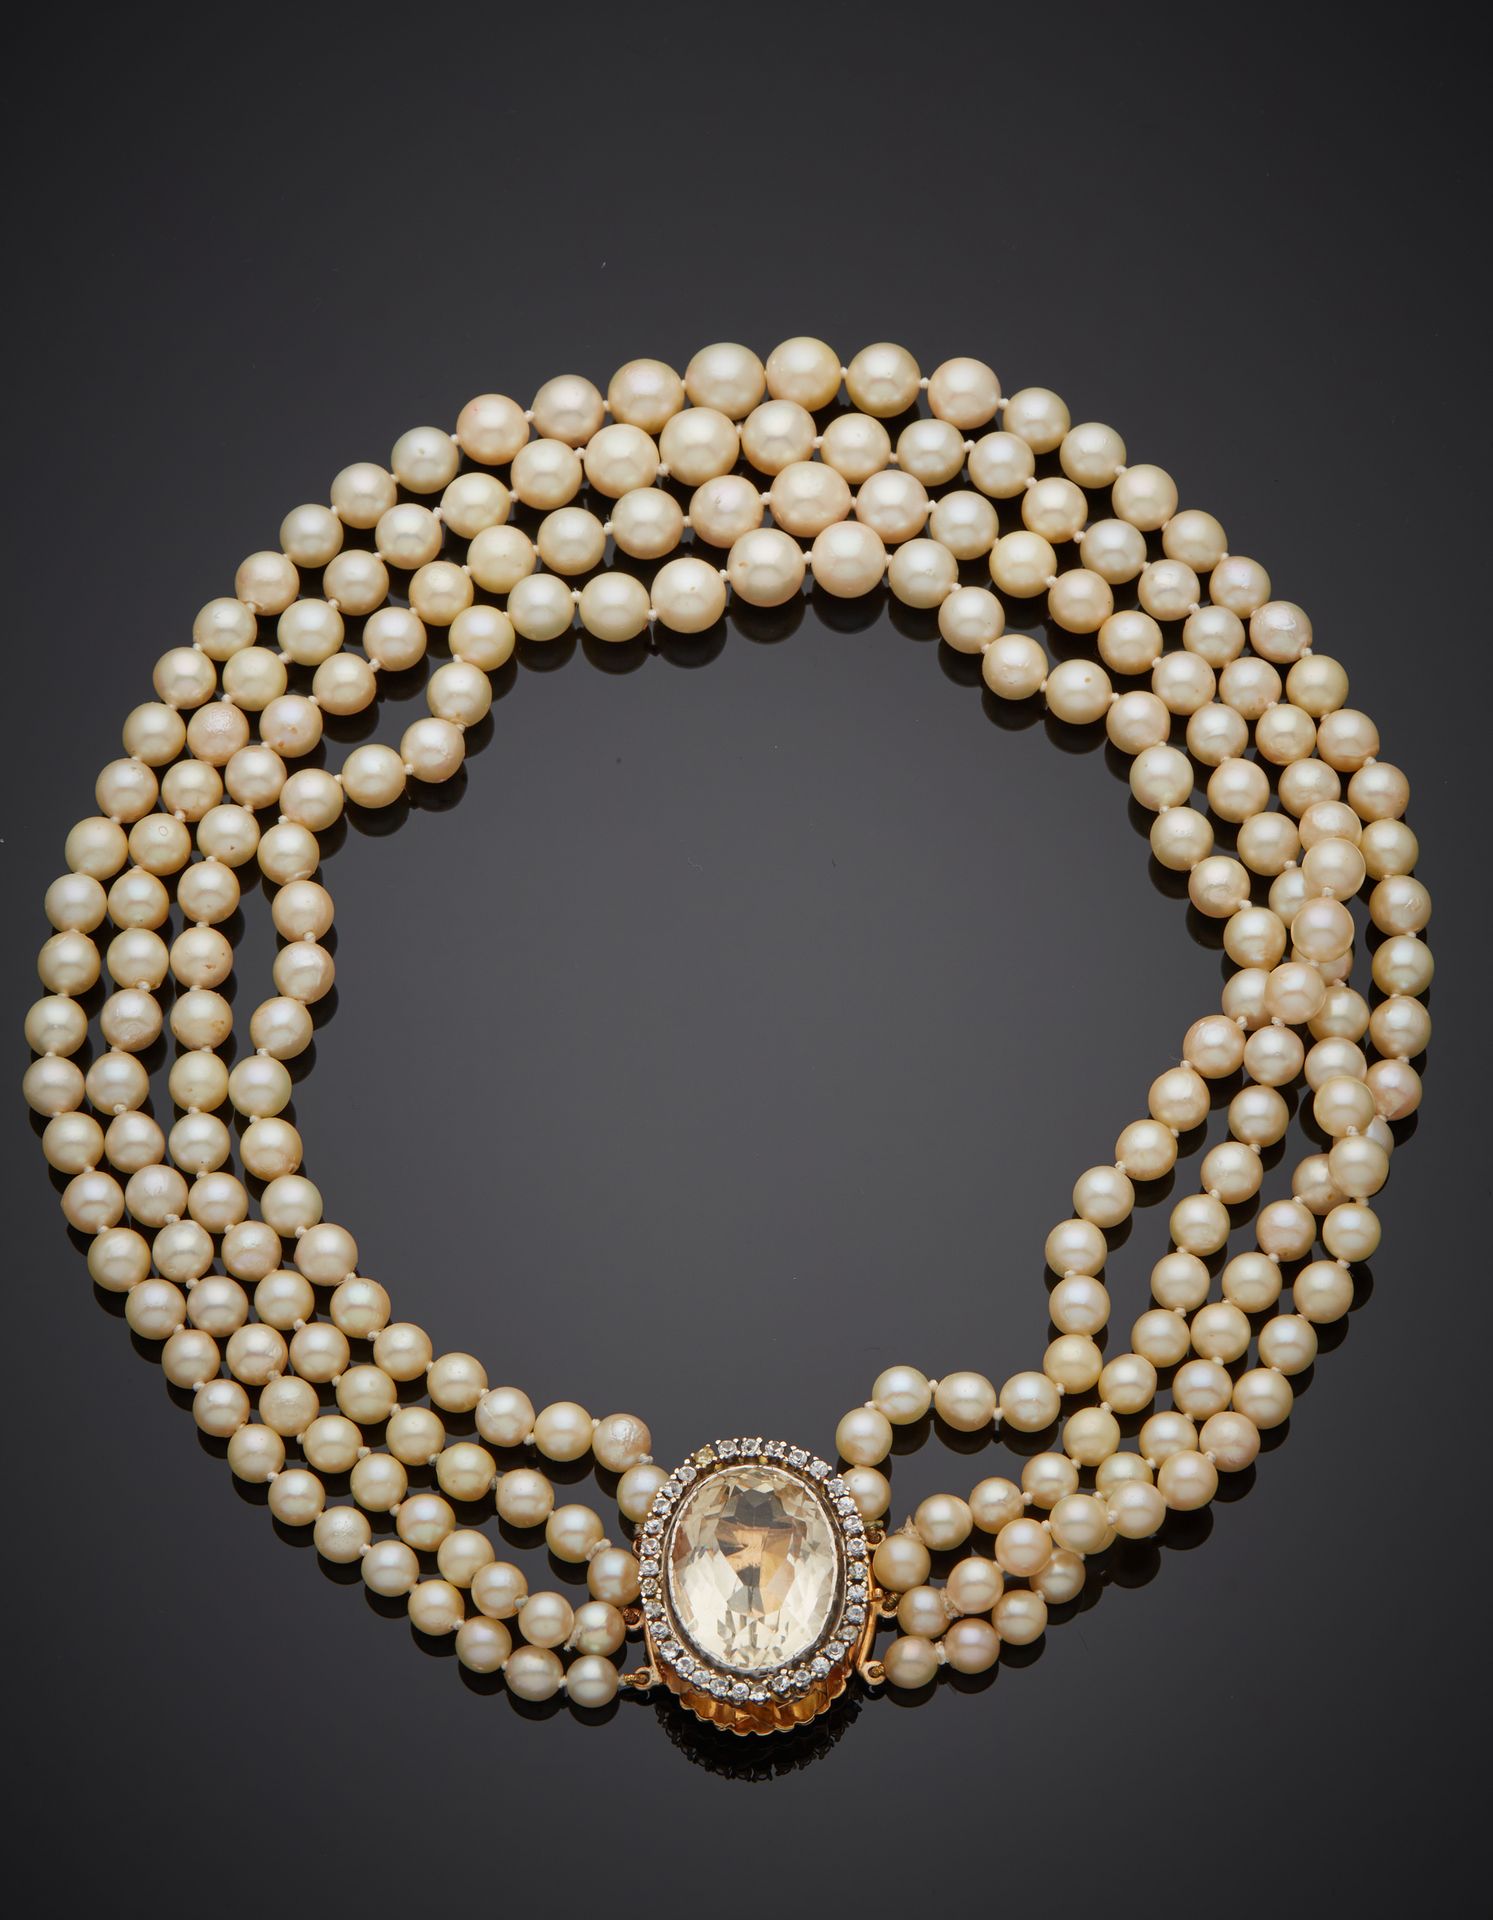 Null 项链由四排乳白色养殖珍珠组成，呈滴状。黄金和白金（750‰）扣子上镶嵌有白色宝石，包括一个较大的椭圆形宝石。 
珍珠的直径：5.5至9毫米。
长度：3&hellip;